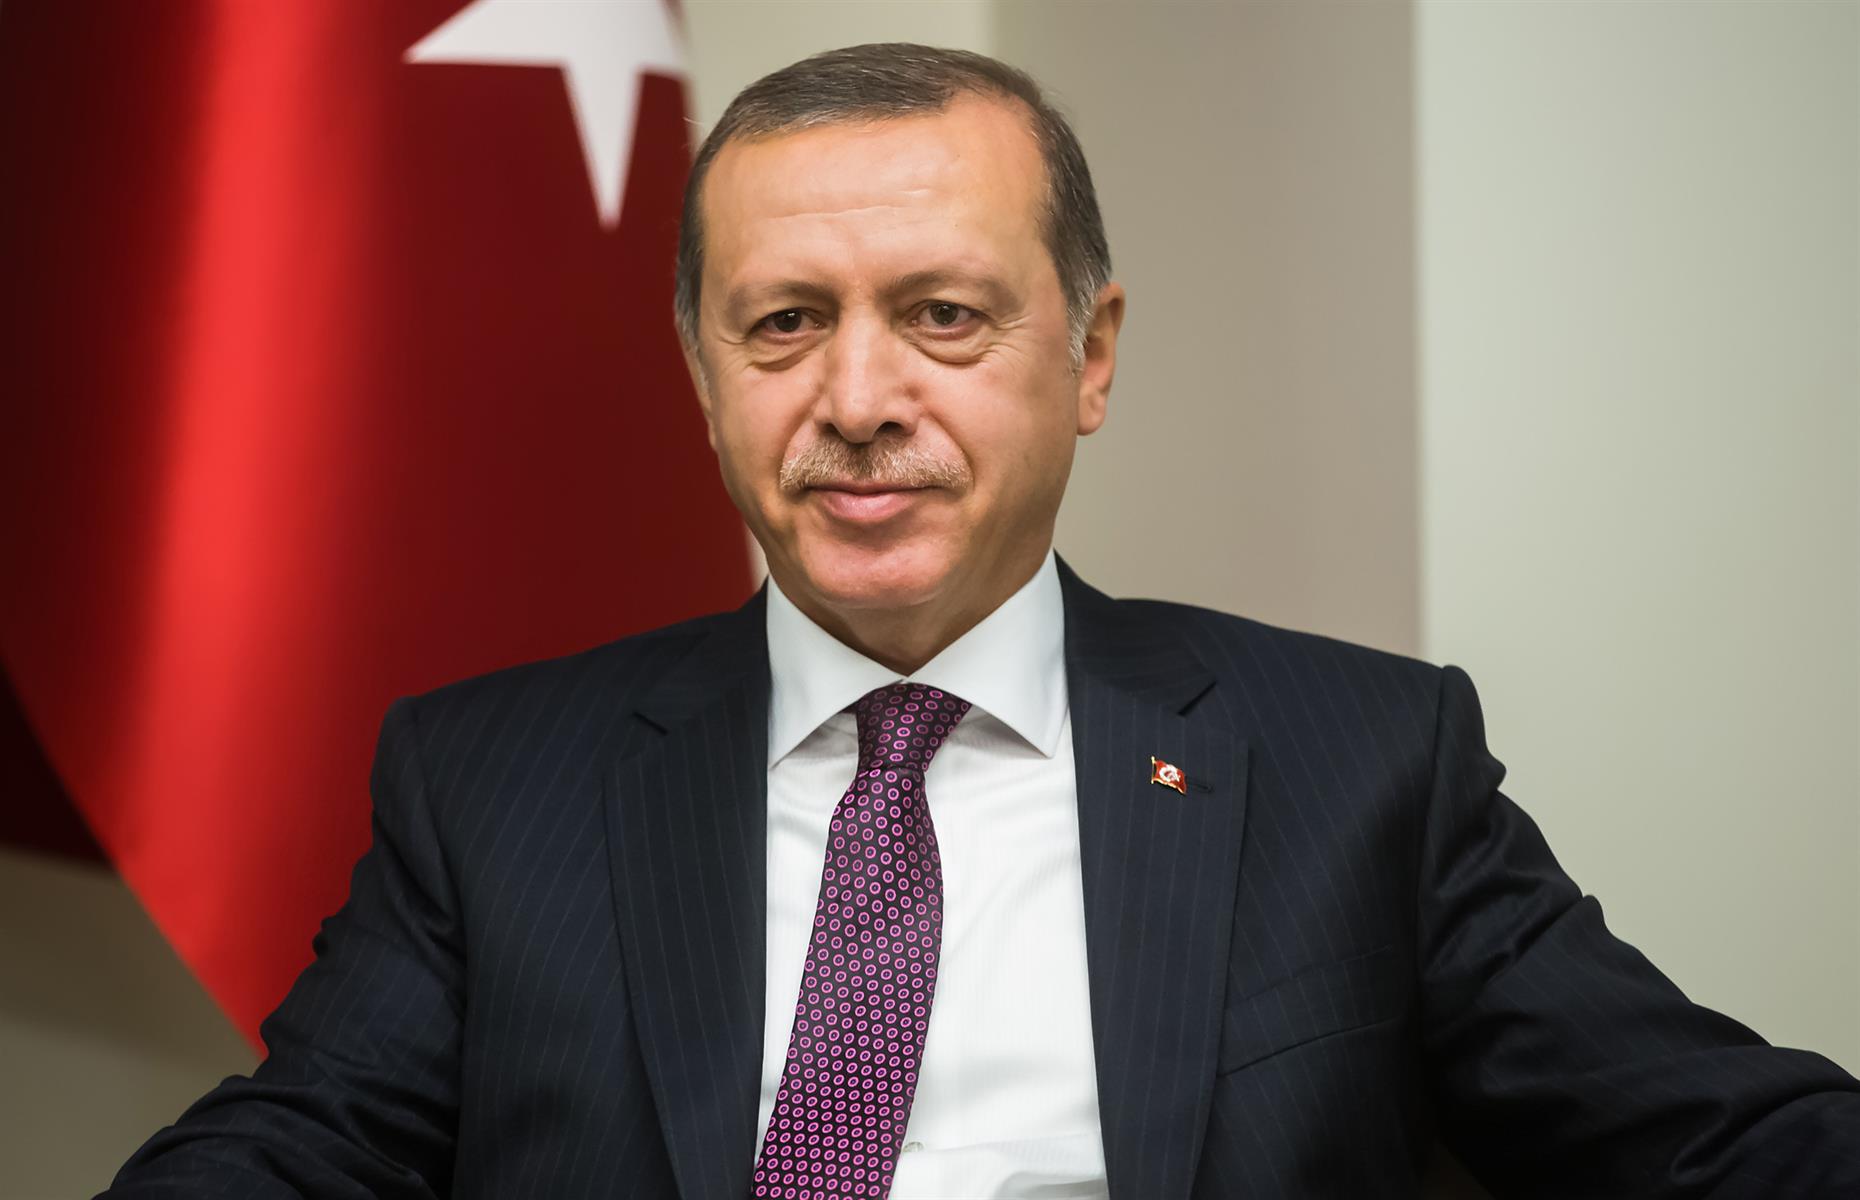 Turkey's Recep Tayyip Erdoğan